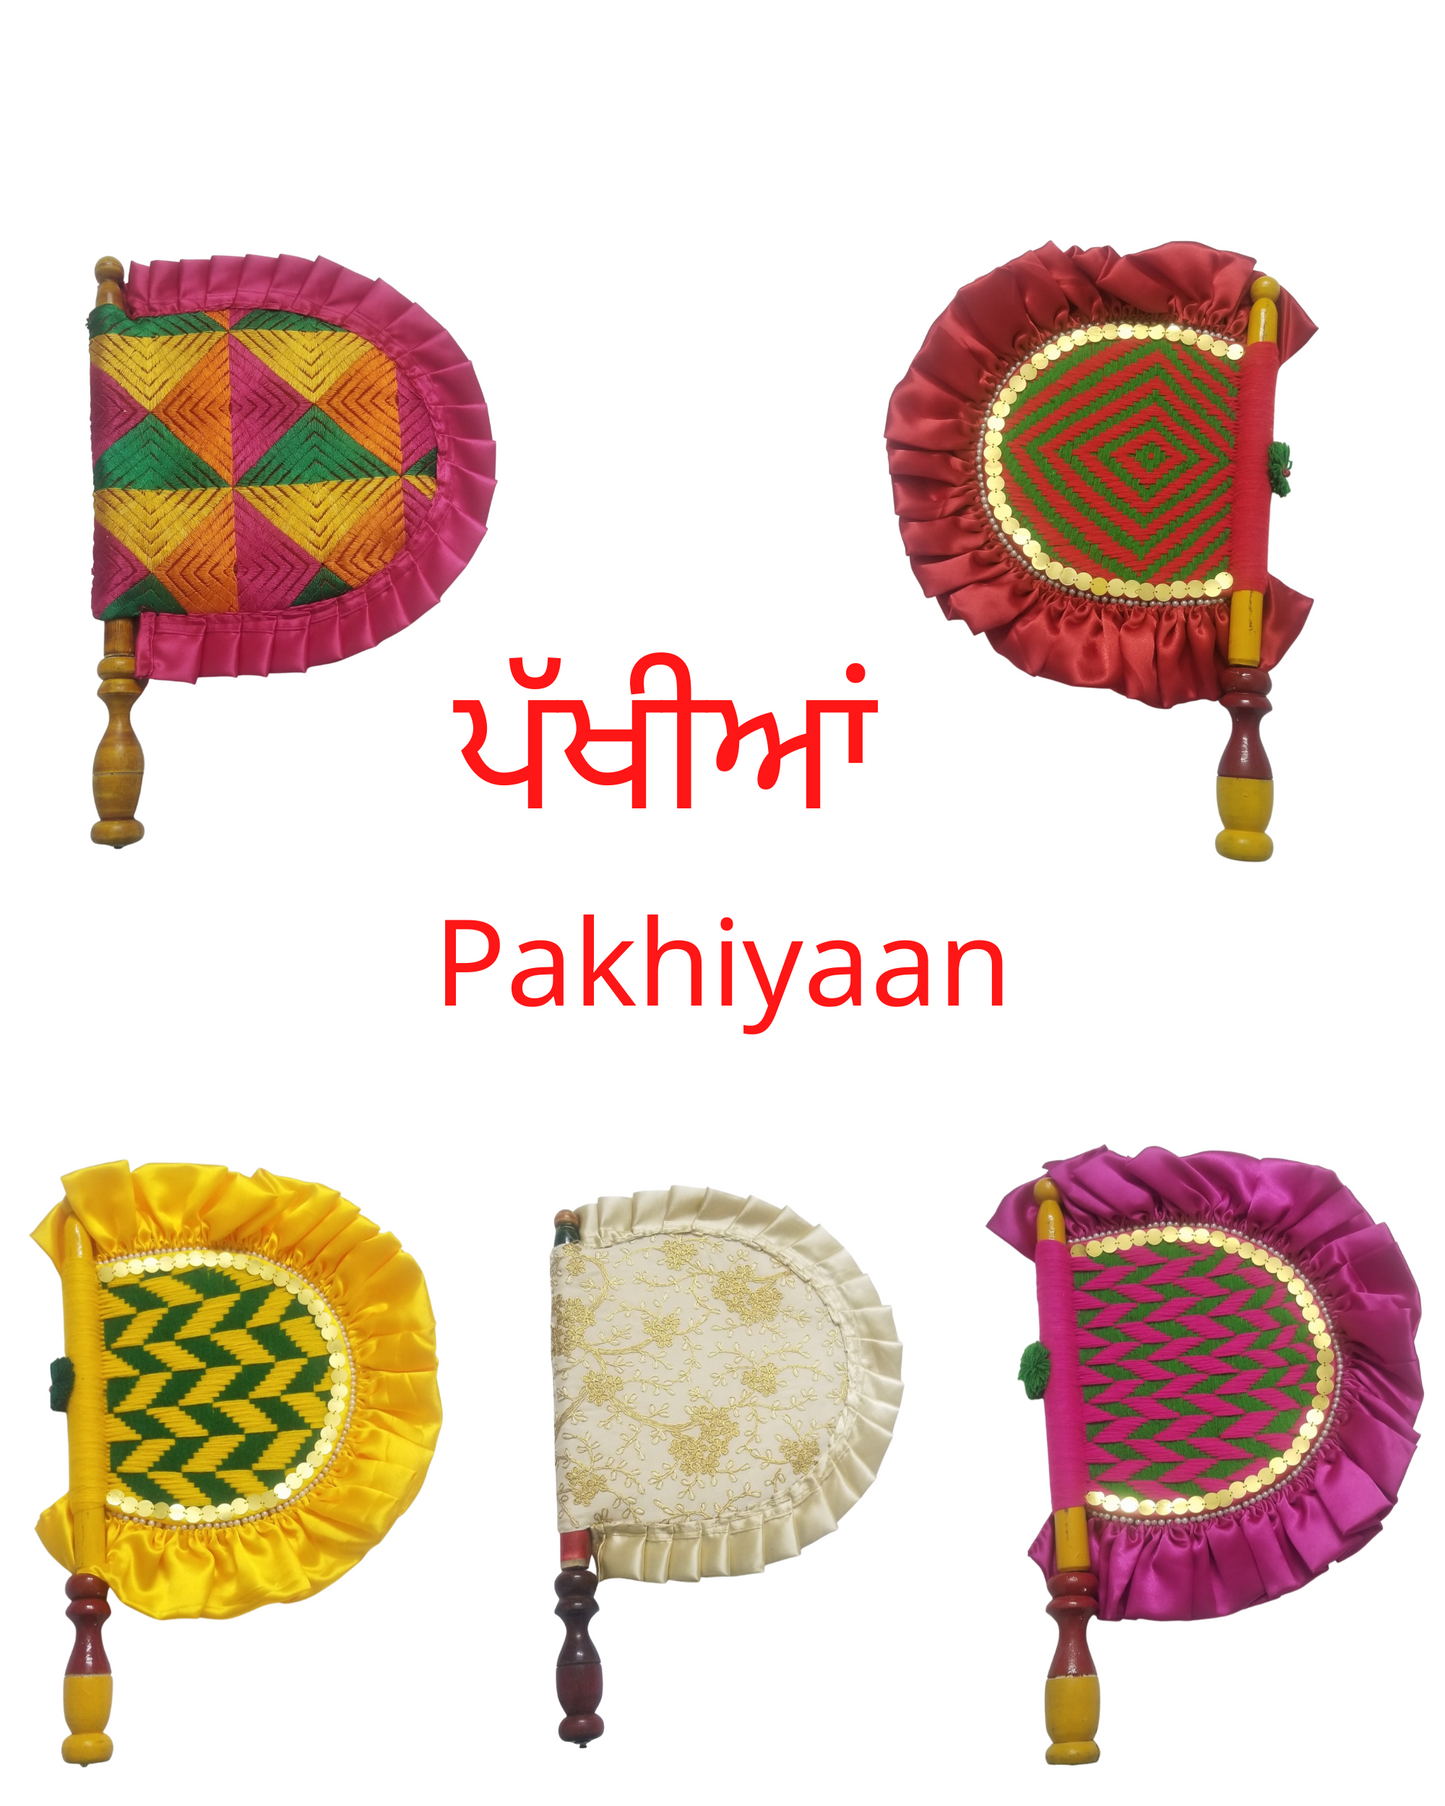 Pakhi / Handfan